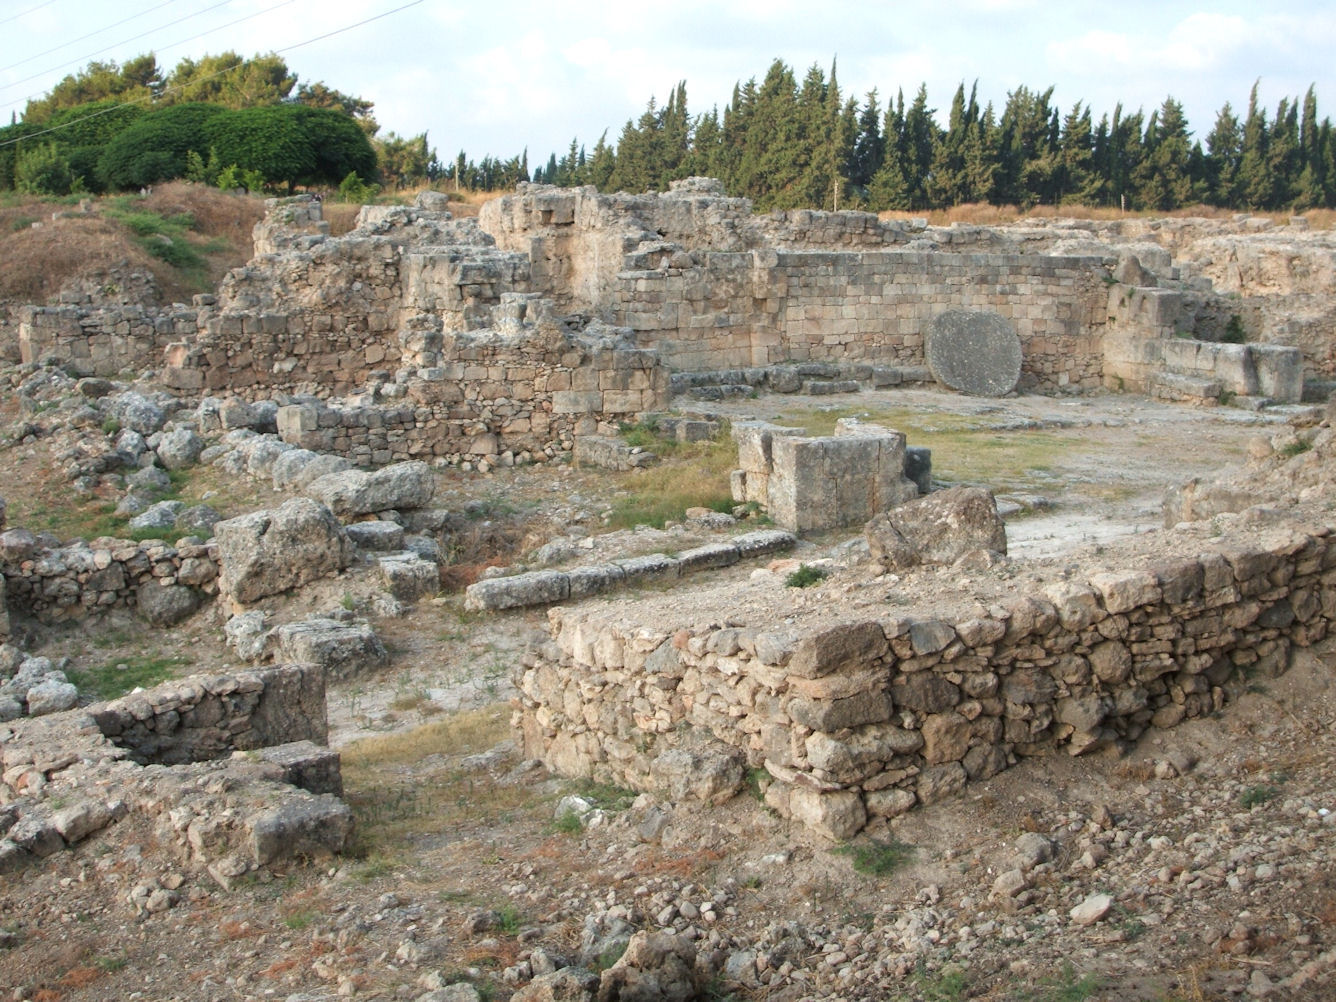 À la découverte du royaume d'Ougarit (Syrie du IIe millénaire